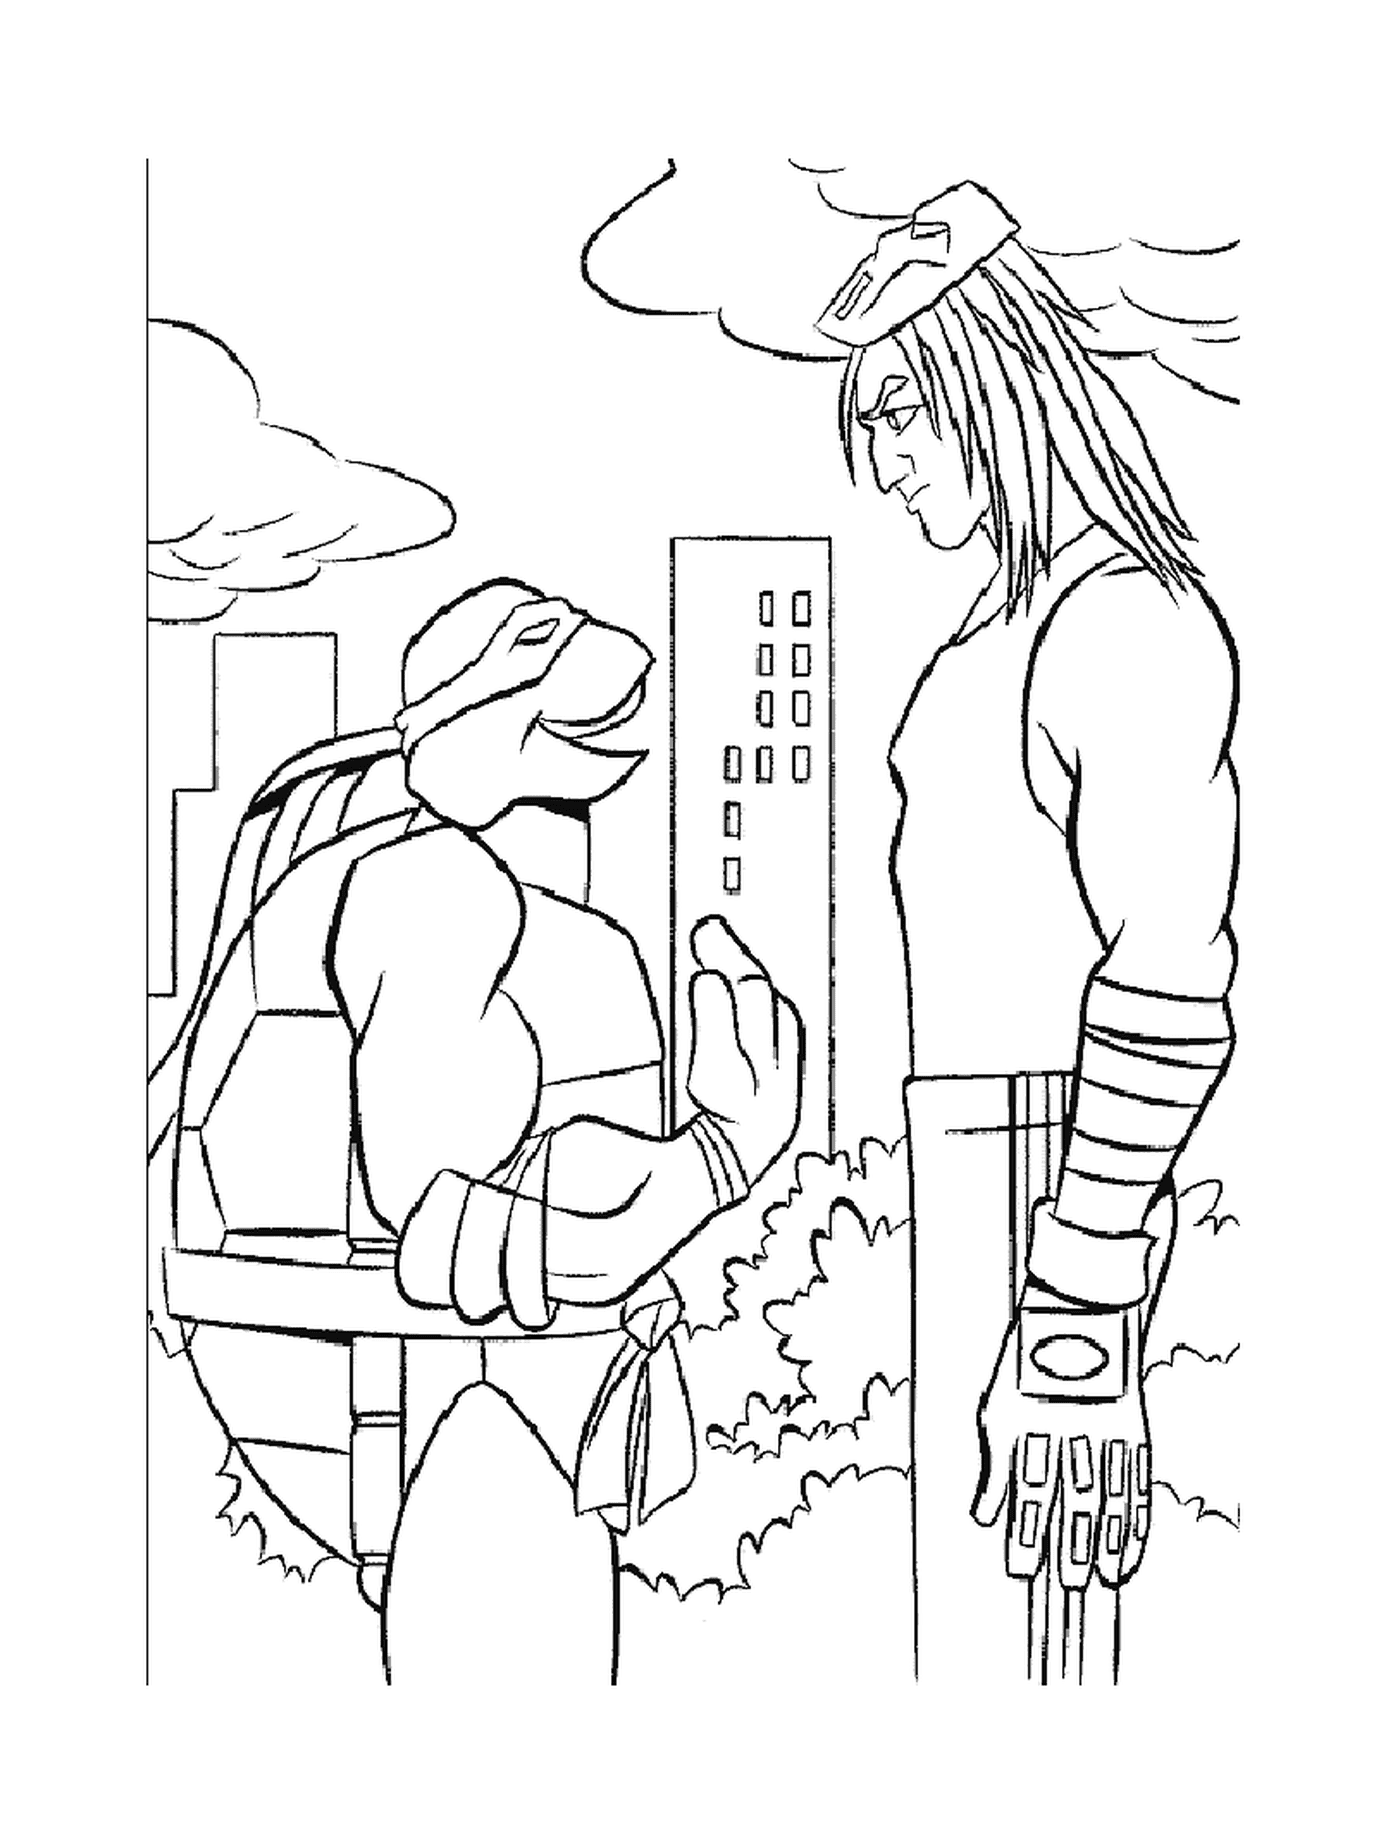  Tartaruga ninja conversando com um homem 